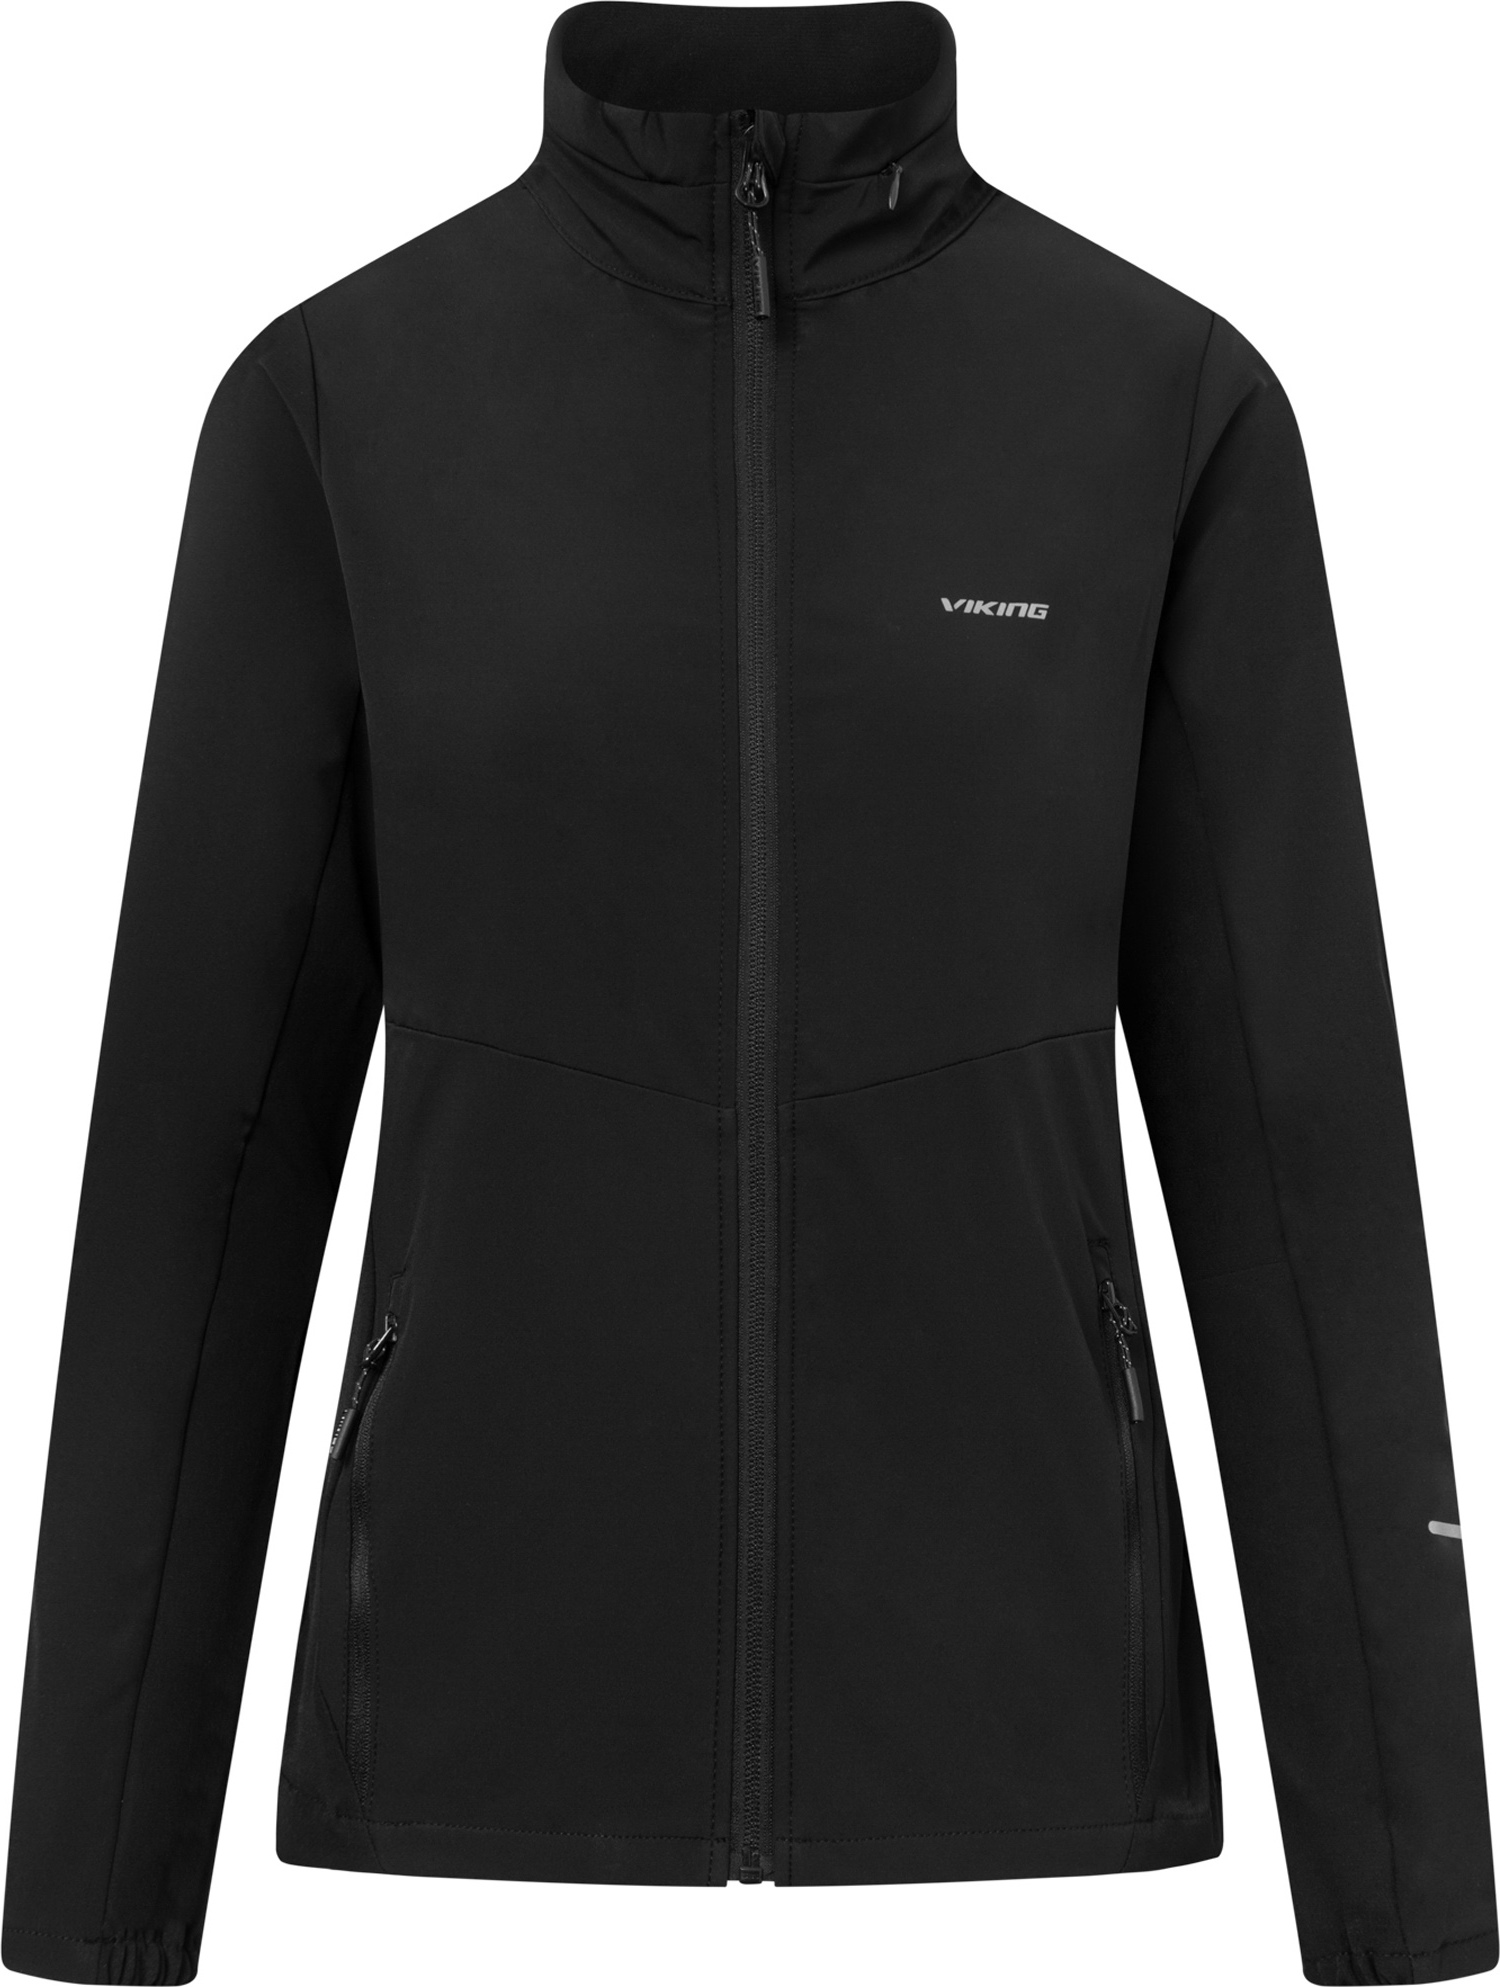 Dámská outdoorová bunda VIKING Acadia černá Velikost: M